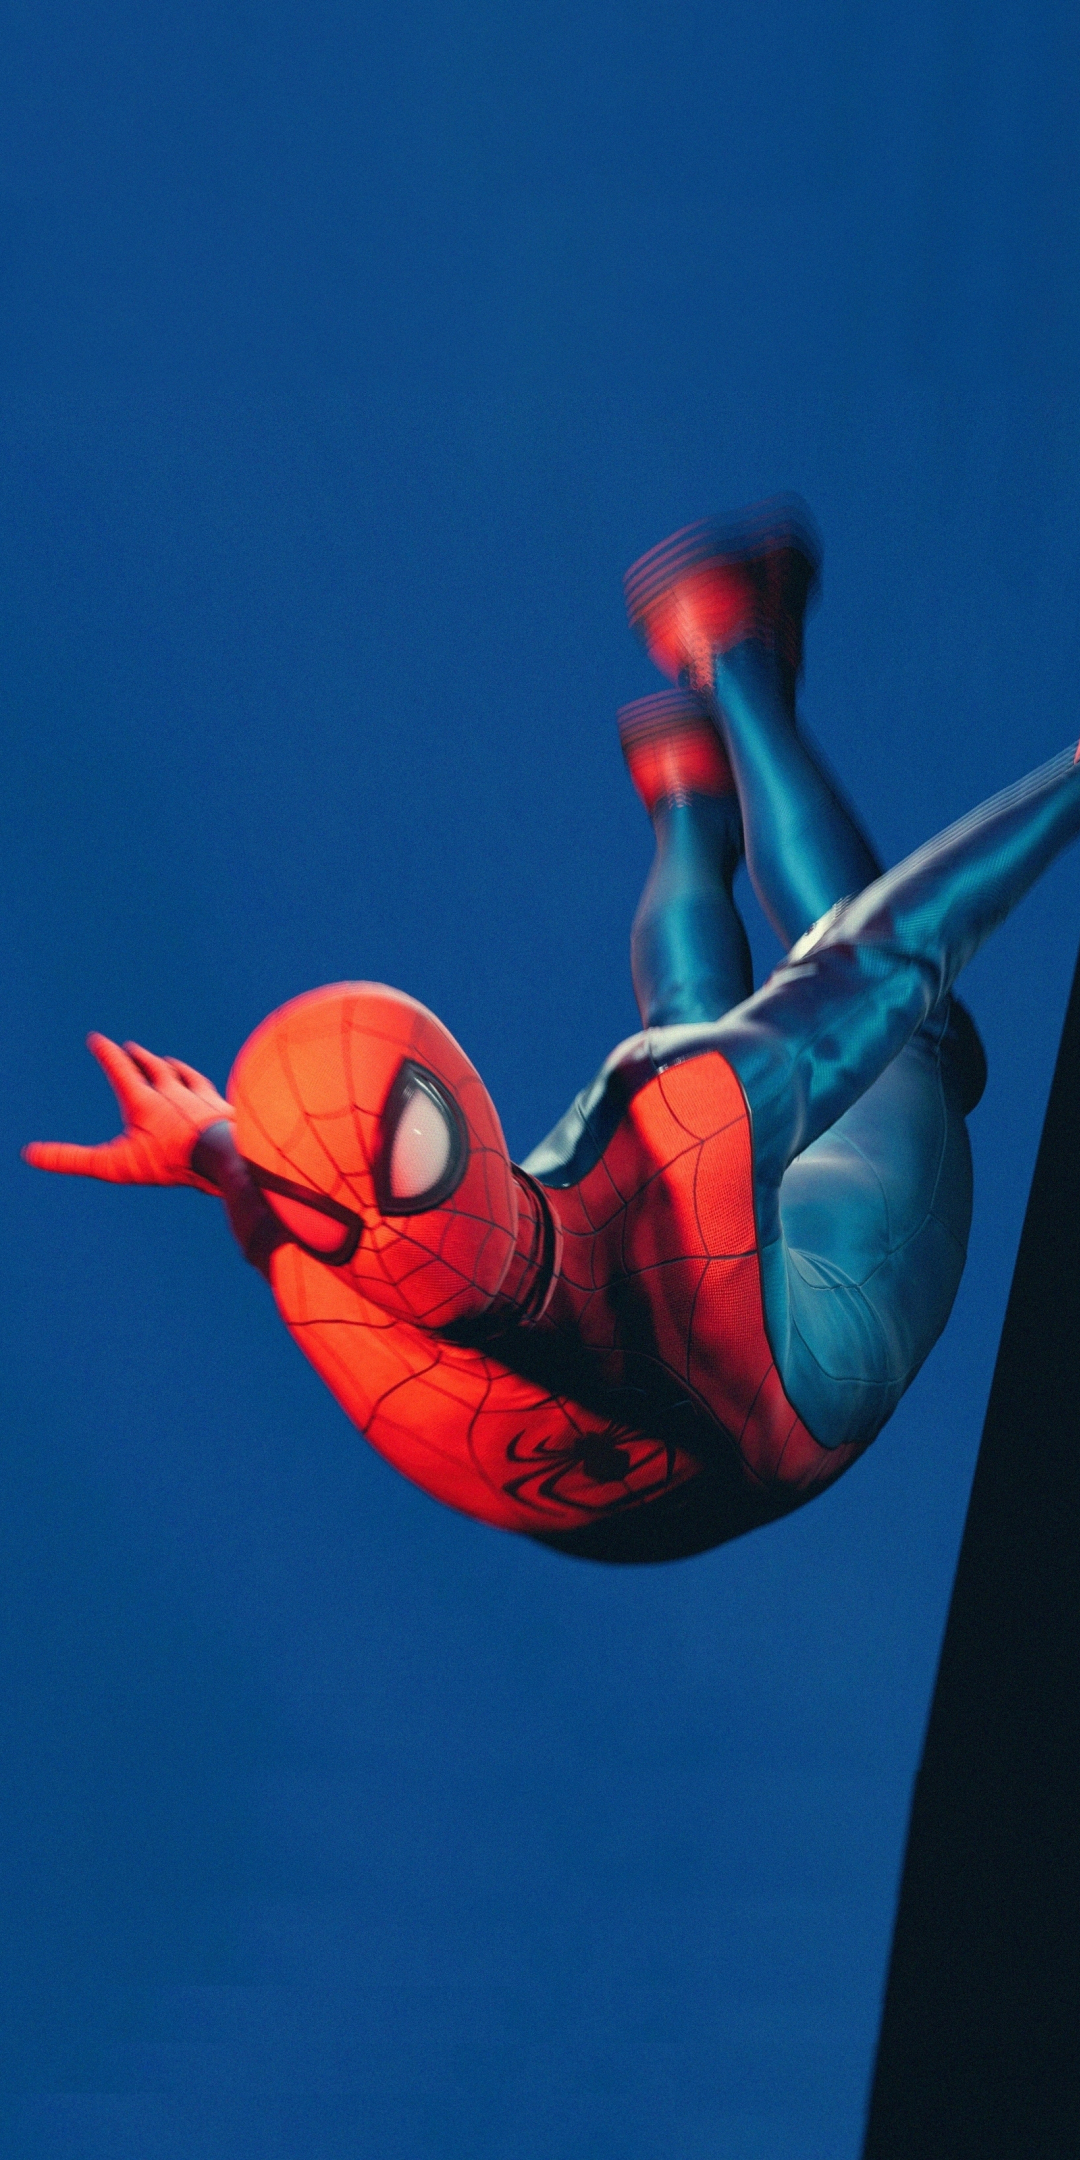 Marvel's spider-man, Miles Morales, jumping, fan art, 1080x2160 wallpaper